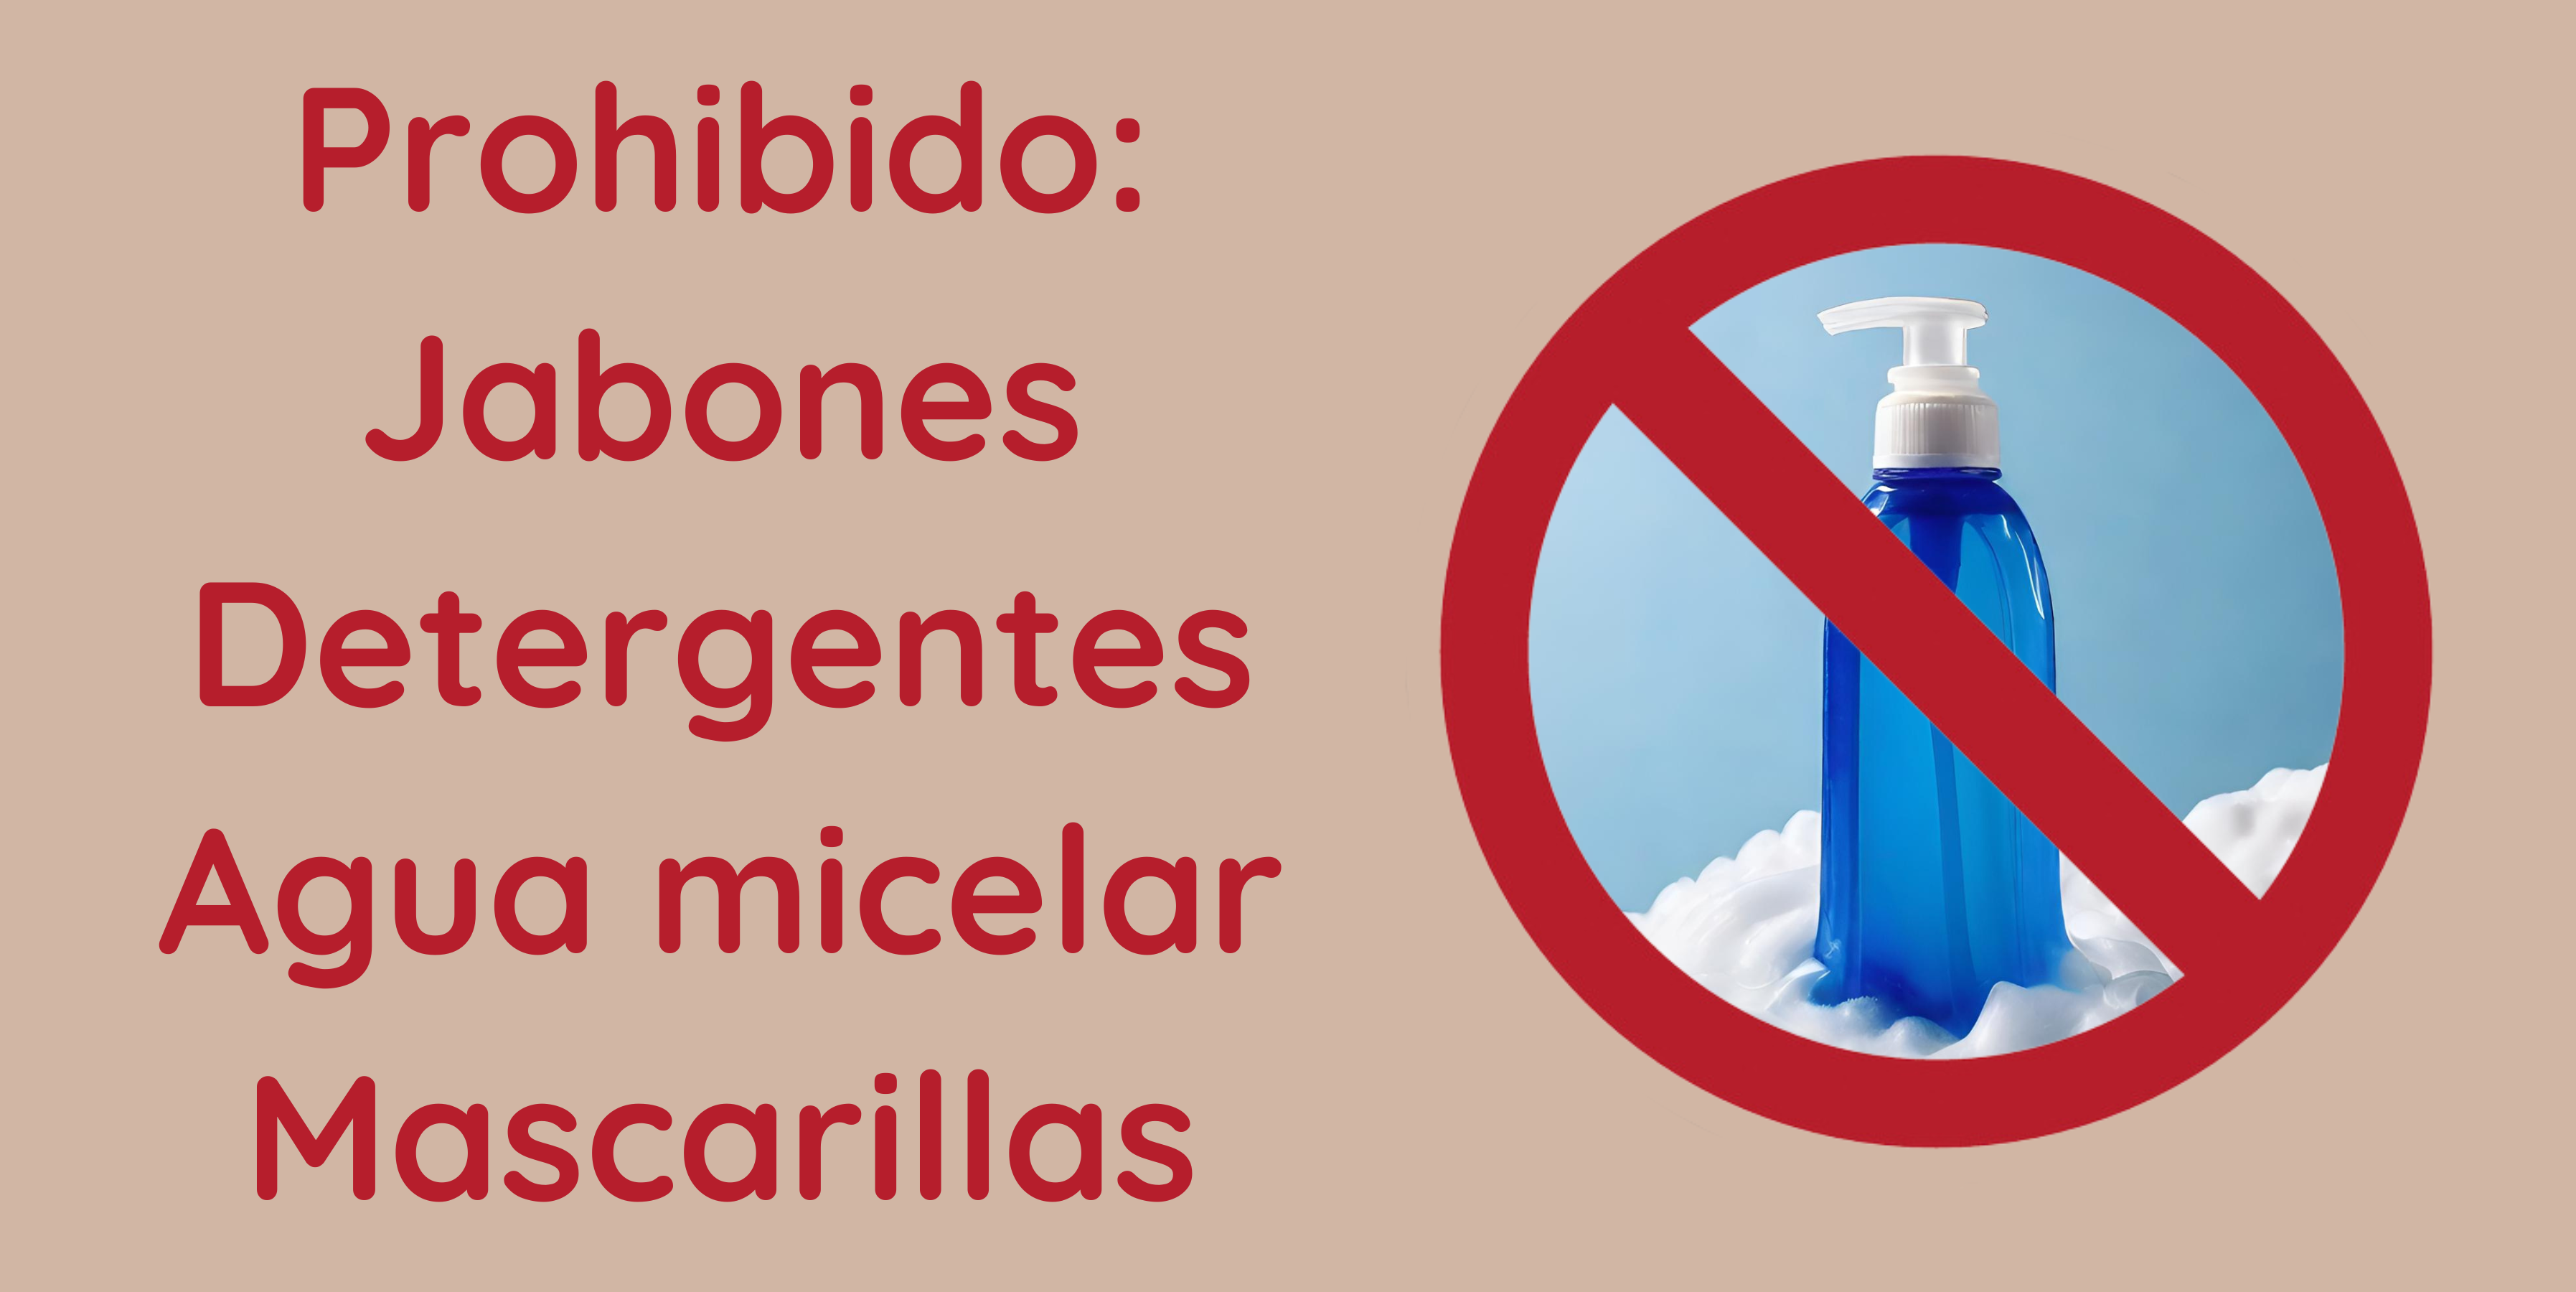 Prohibido Jabones Detergentes Agua micelar Mascarillas